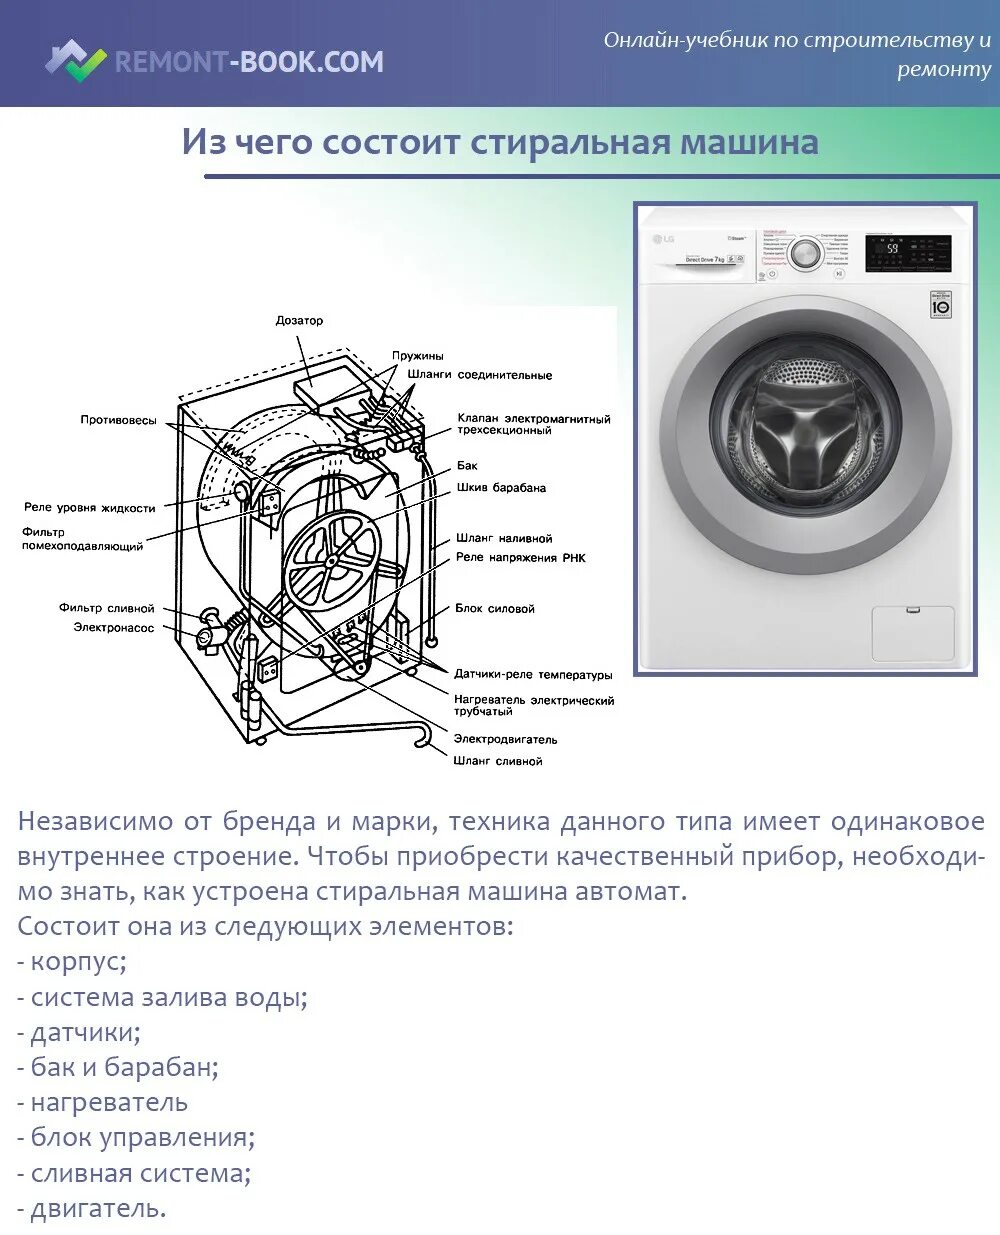 Отделы стиральной машинки. Из чего состоит стиральная машина автомат LG. Строение стиральной машины LG. Из чего состоит стиральная машина автомат самсунг. Схема сливной системы стиральной машины.